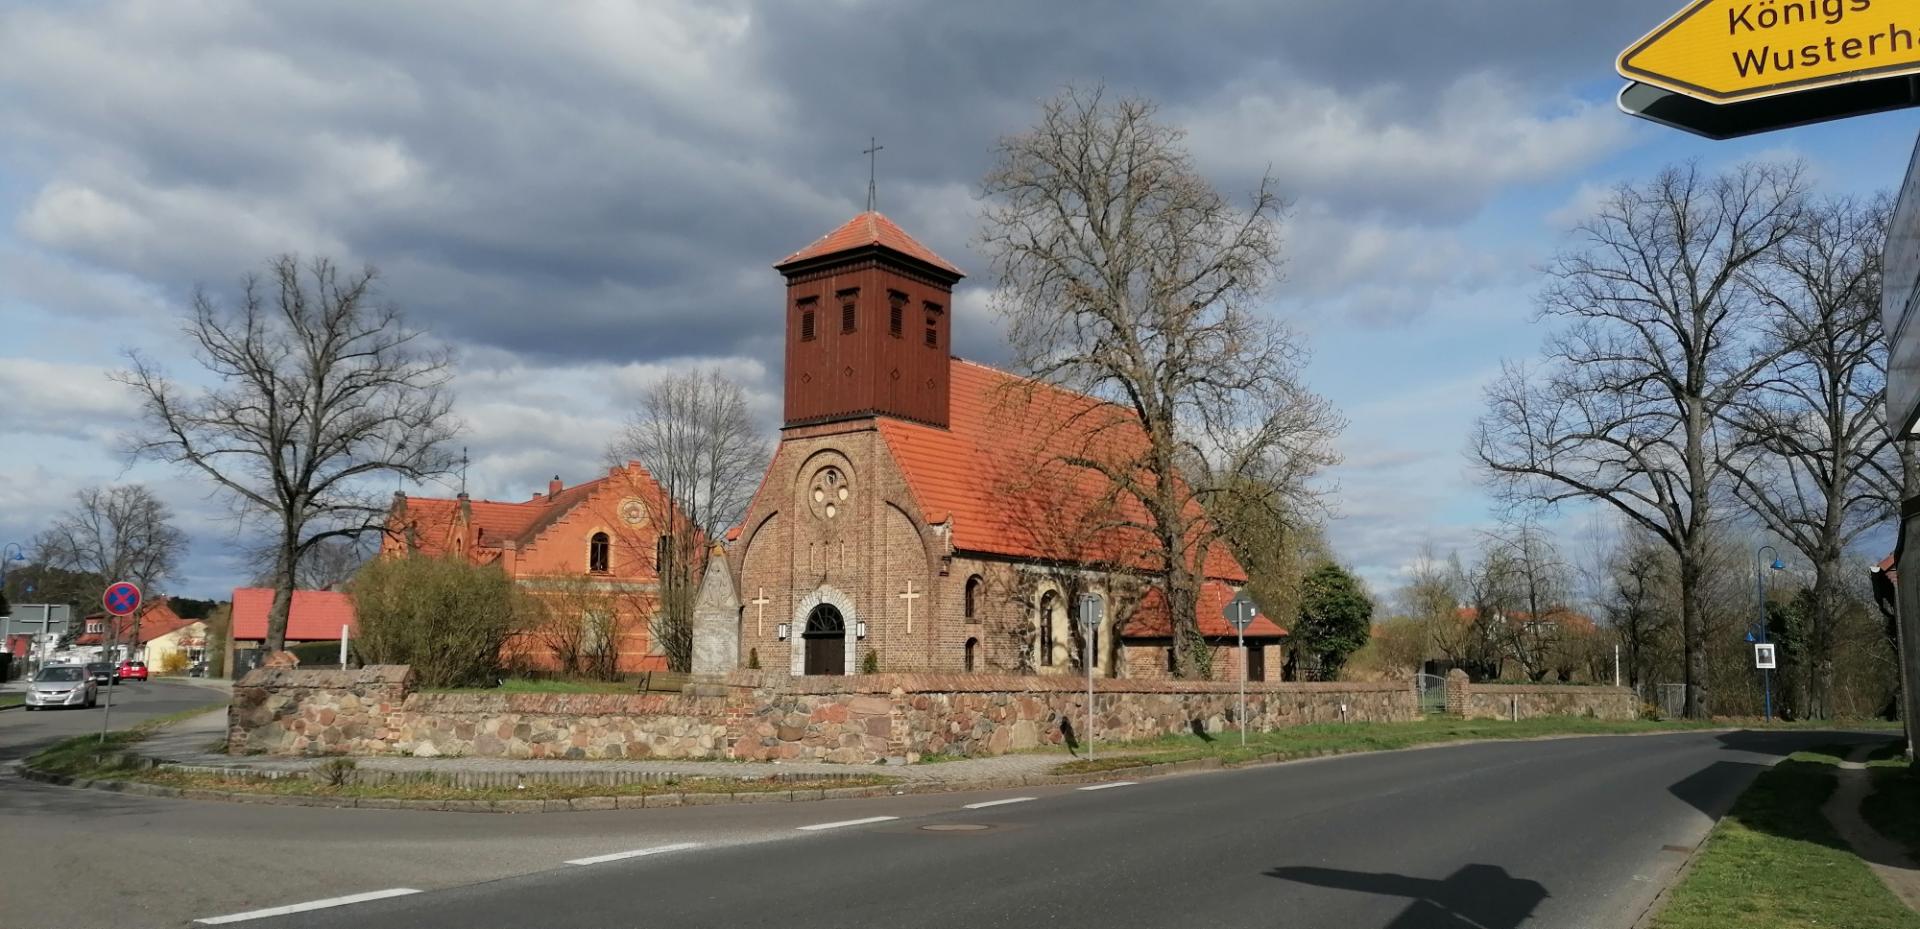 Die Dorfkirche in Bestensee - gedeckt mit gespendeten Biberschwanzziegeln. Foto: Dörthe Ziemer